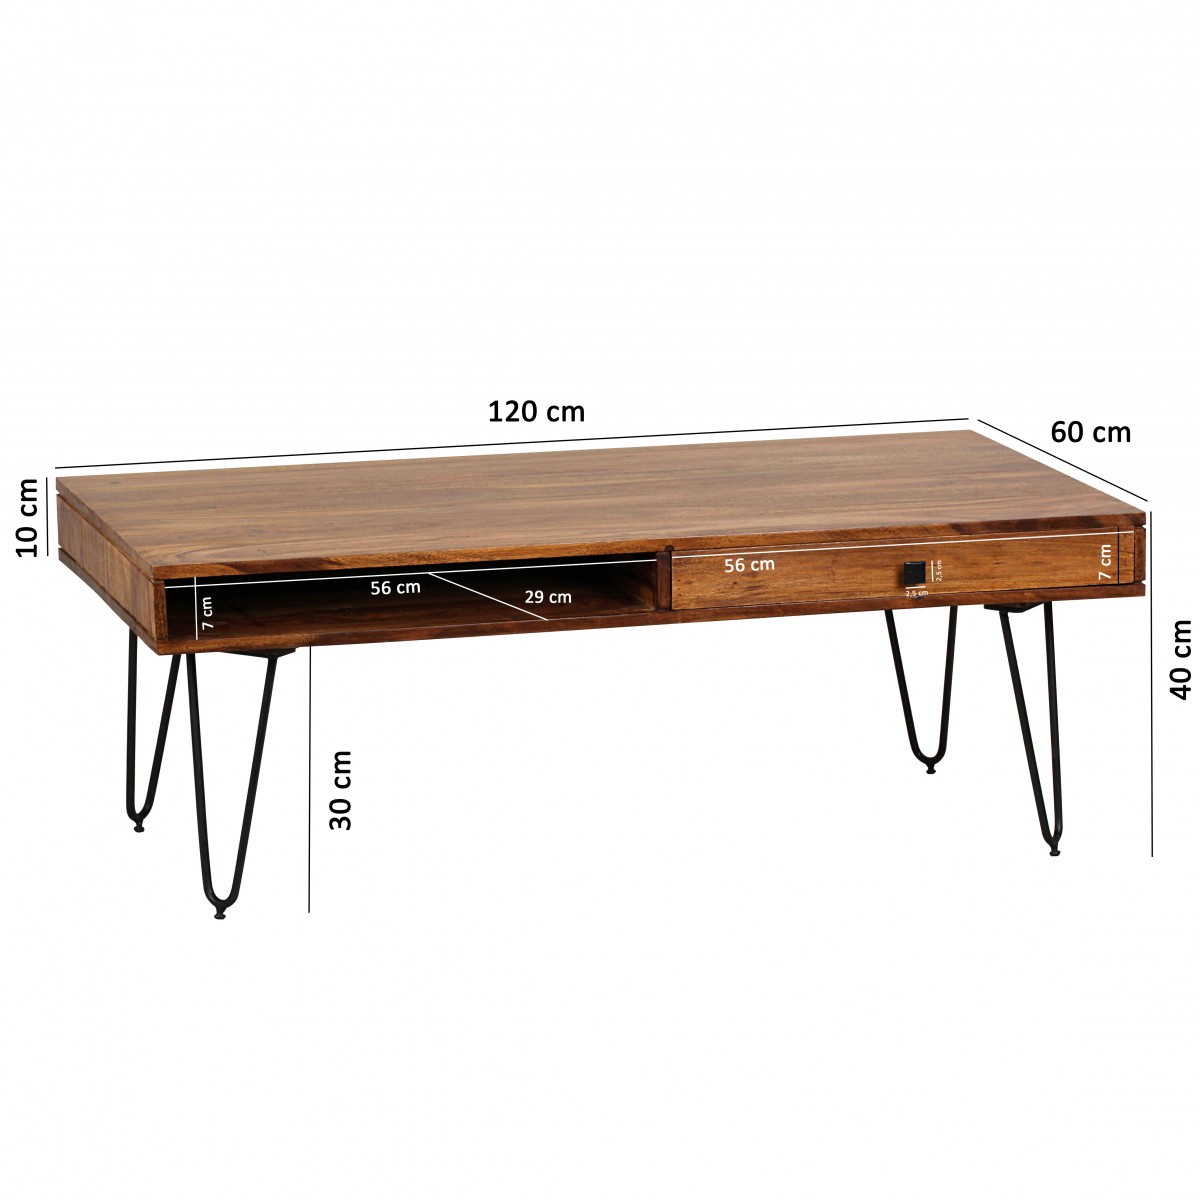 Wohnling WL1.513 Sheesham Couchtisch, Wohnzimmer-Tisch, | Massiv-Holz Lieferung 120cm breit, DiTo24 inkl